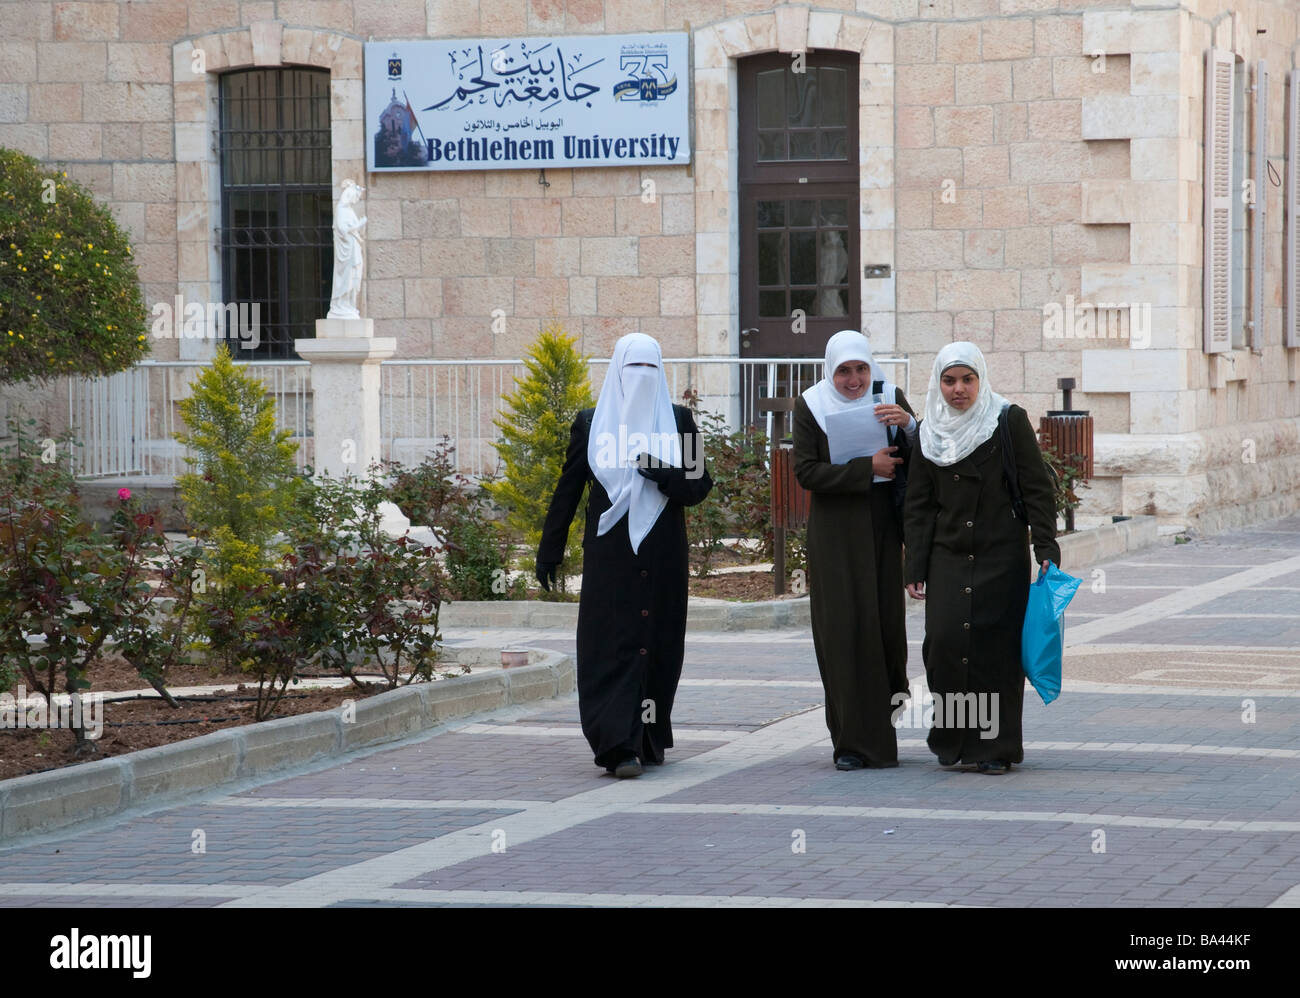 Palestinian Authority Bethlehem Bethlehem University 3 young muslem women walking together Stock Photo